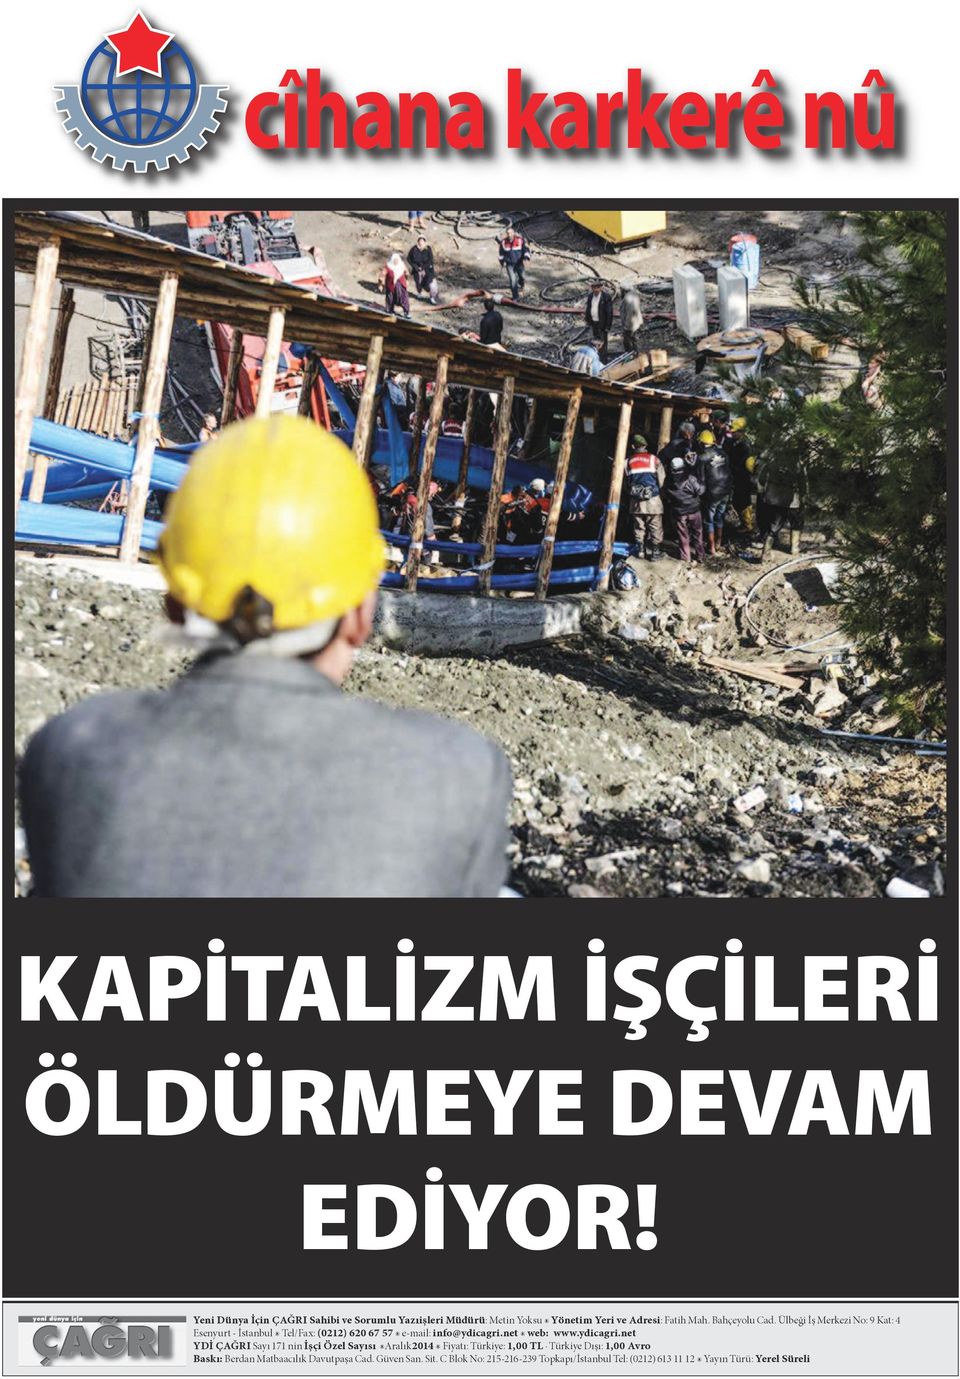 Ülbeği İş Merkezi No: 9 Kat: 4 Esenyurt - İstanbul Tel/Fax: (0212) 620 67 57 e-mail: info@ydicagri.